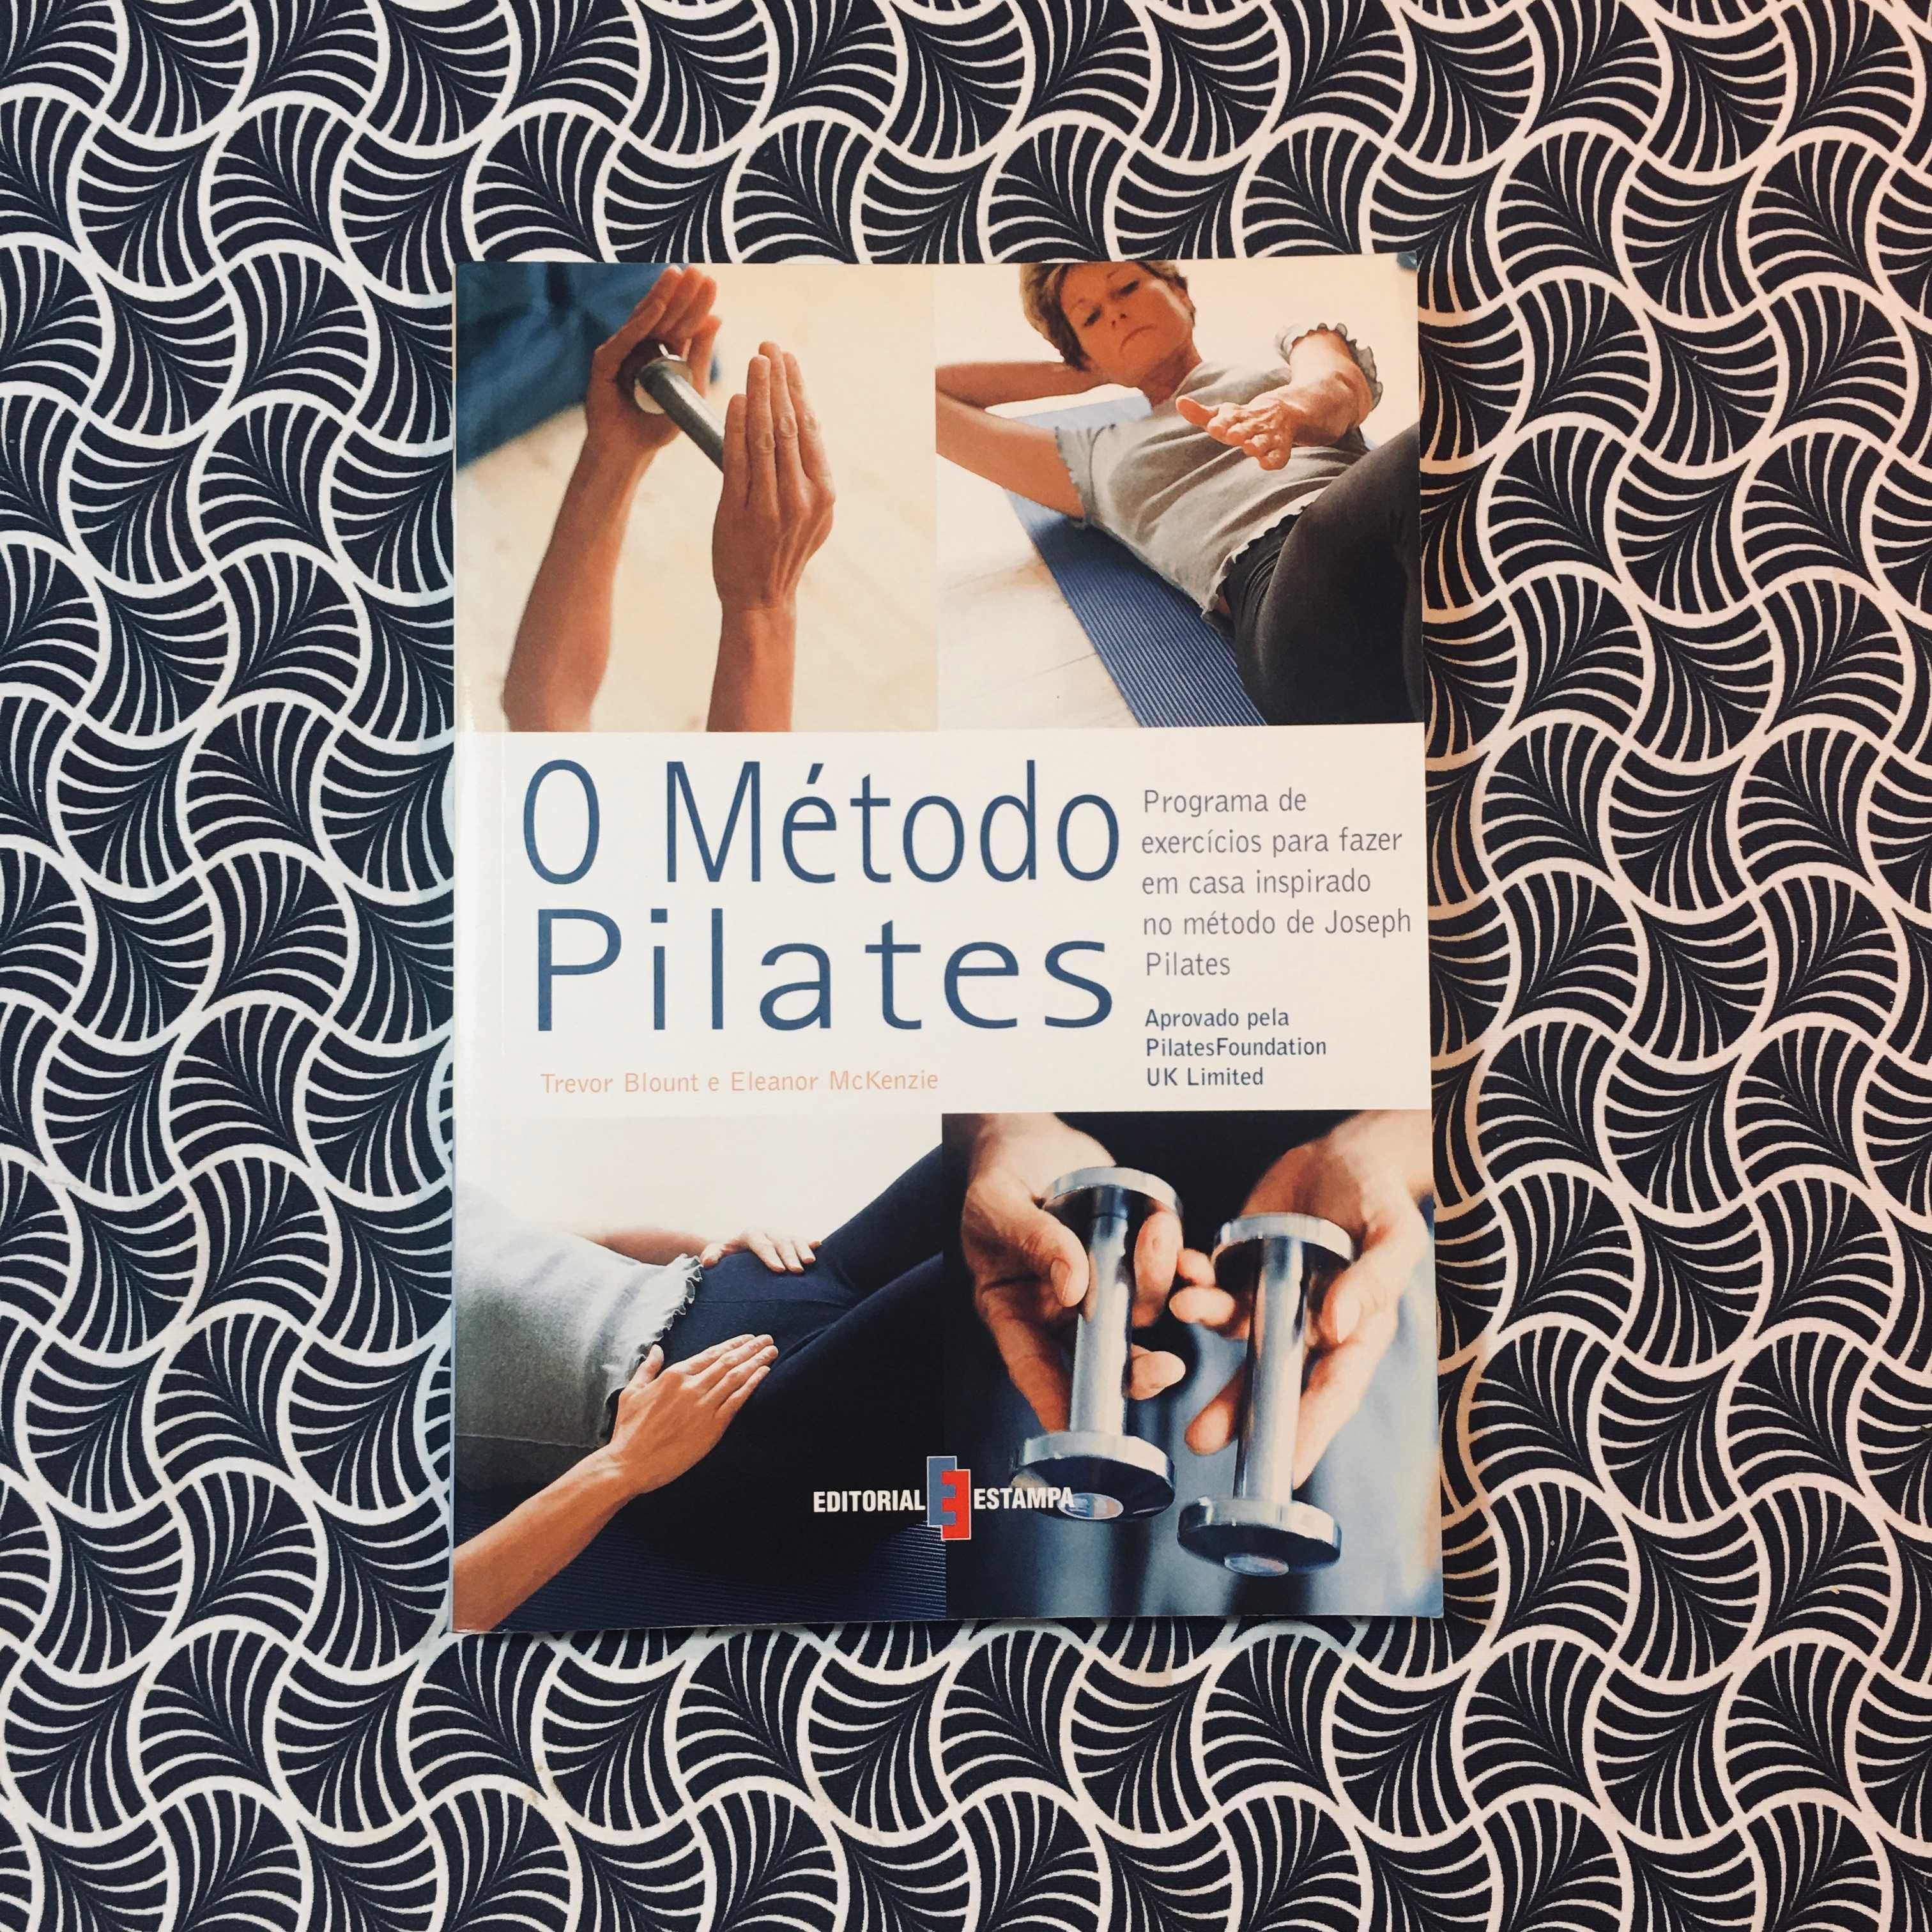 O Método Pilates - Trevor Blount e Eleanor McKenzie